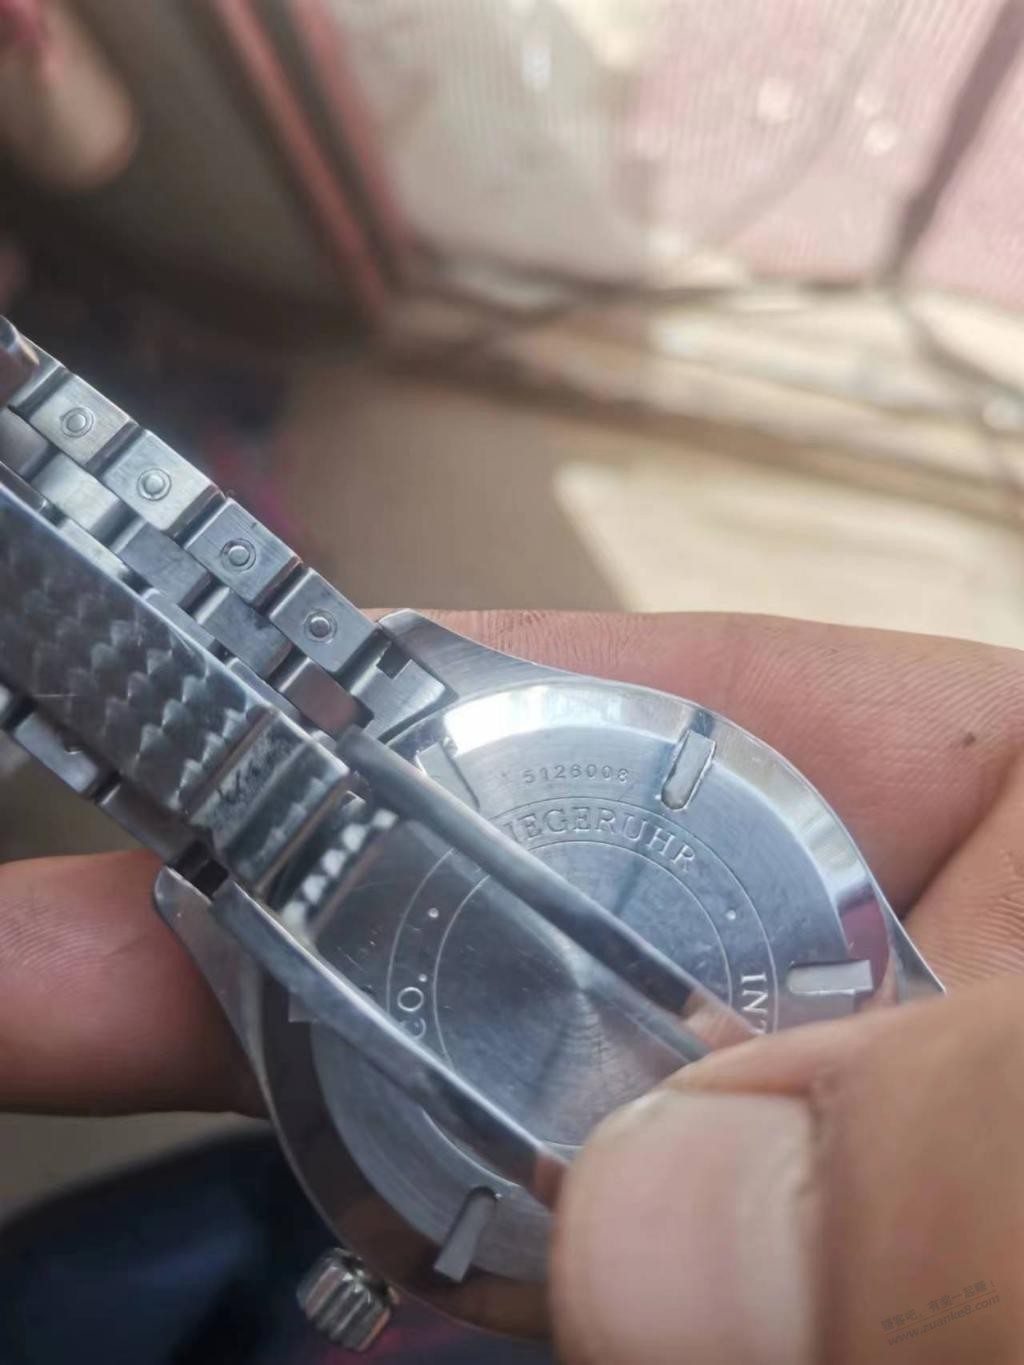 亲戚捡到一个万国手表 问我咋鉴定真假-惠小助(52huixz.com)